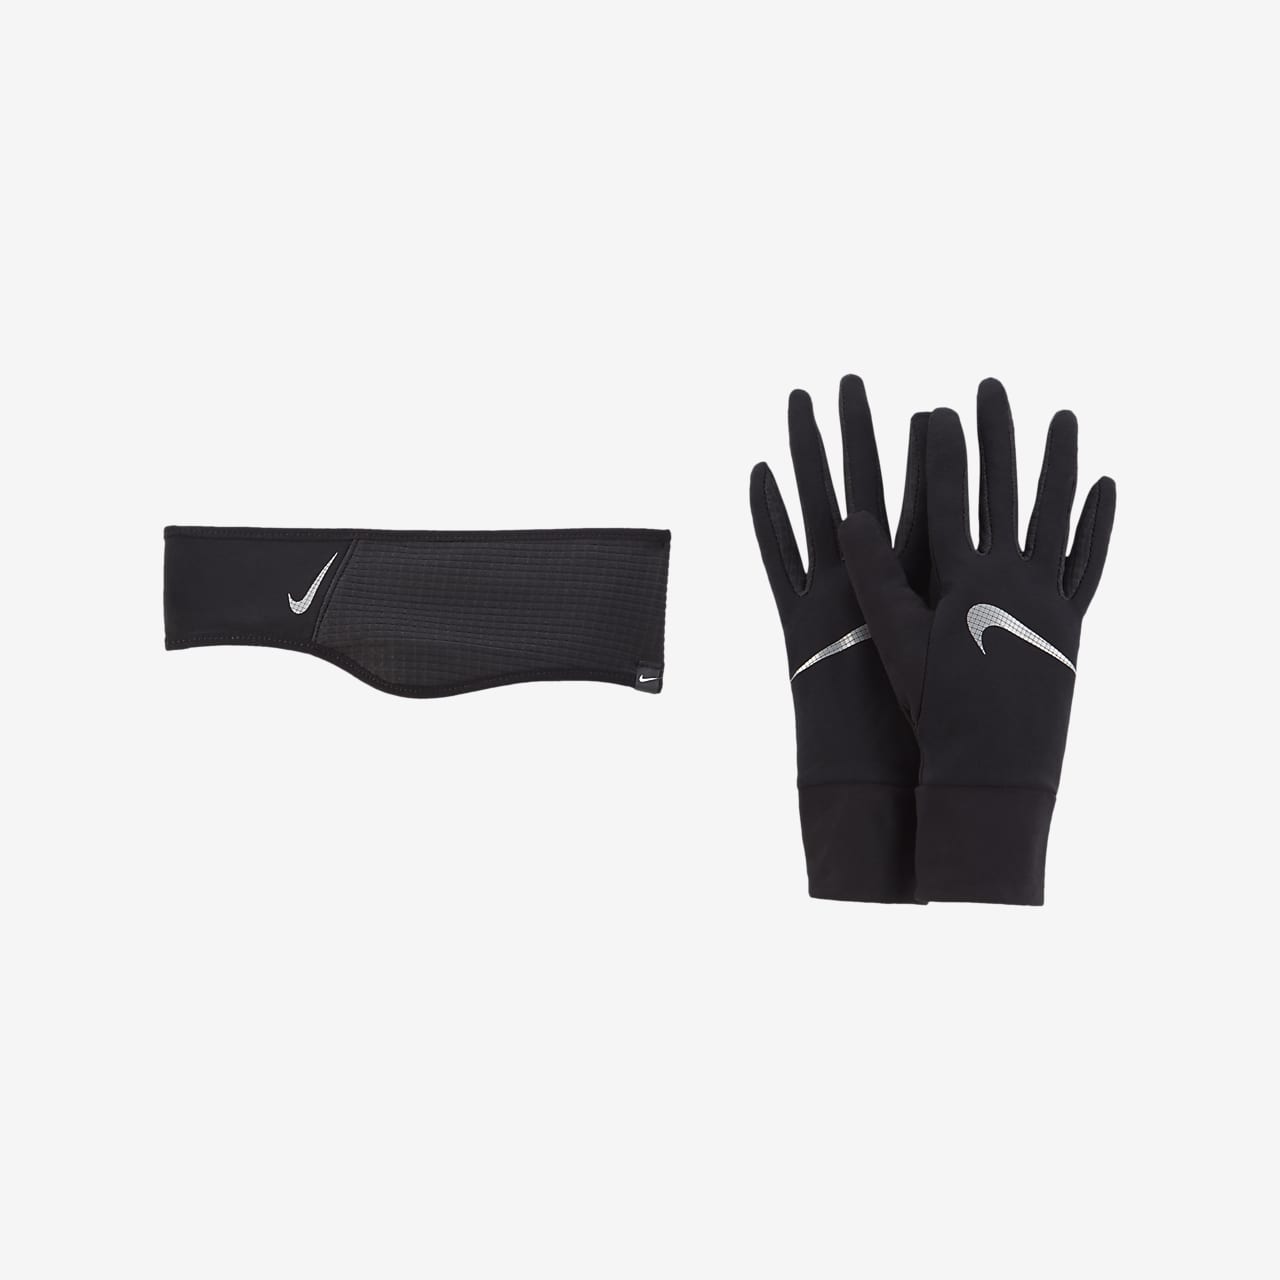 Running Headband and Glove Set. Nike 